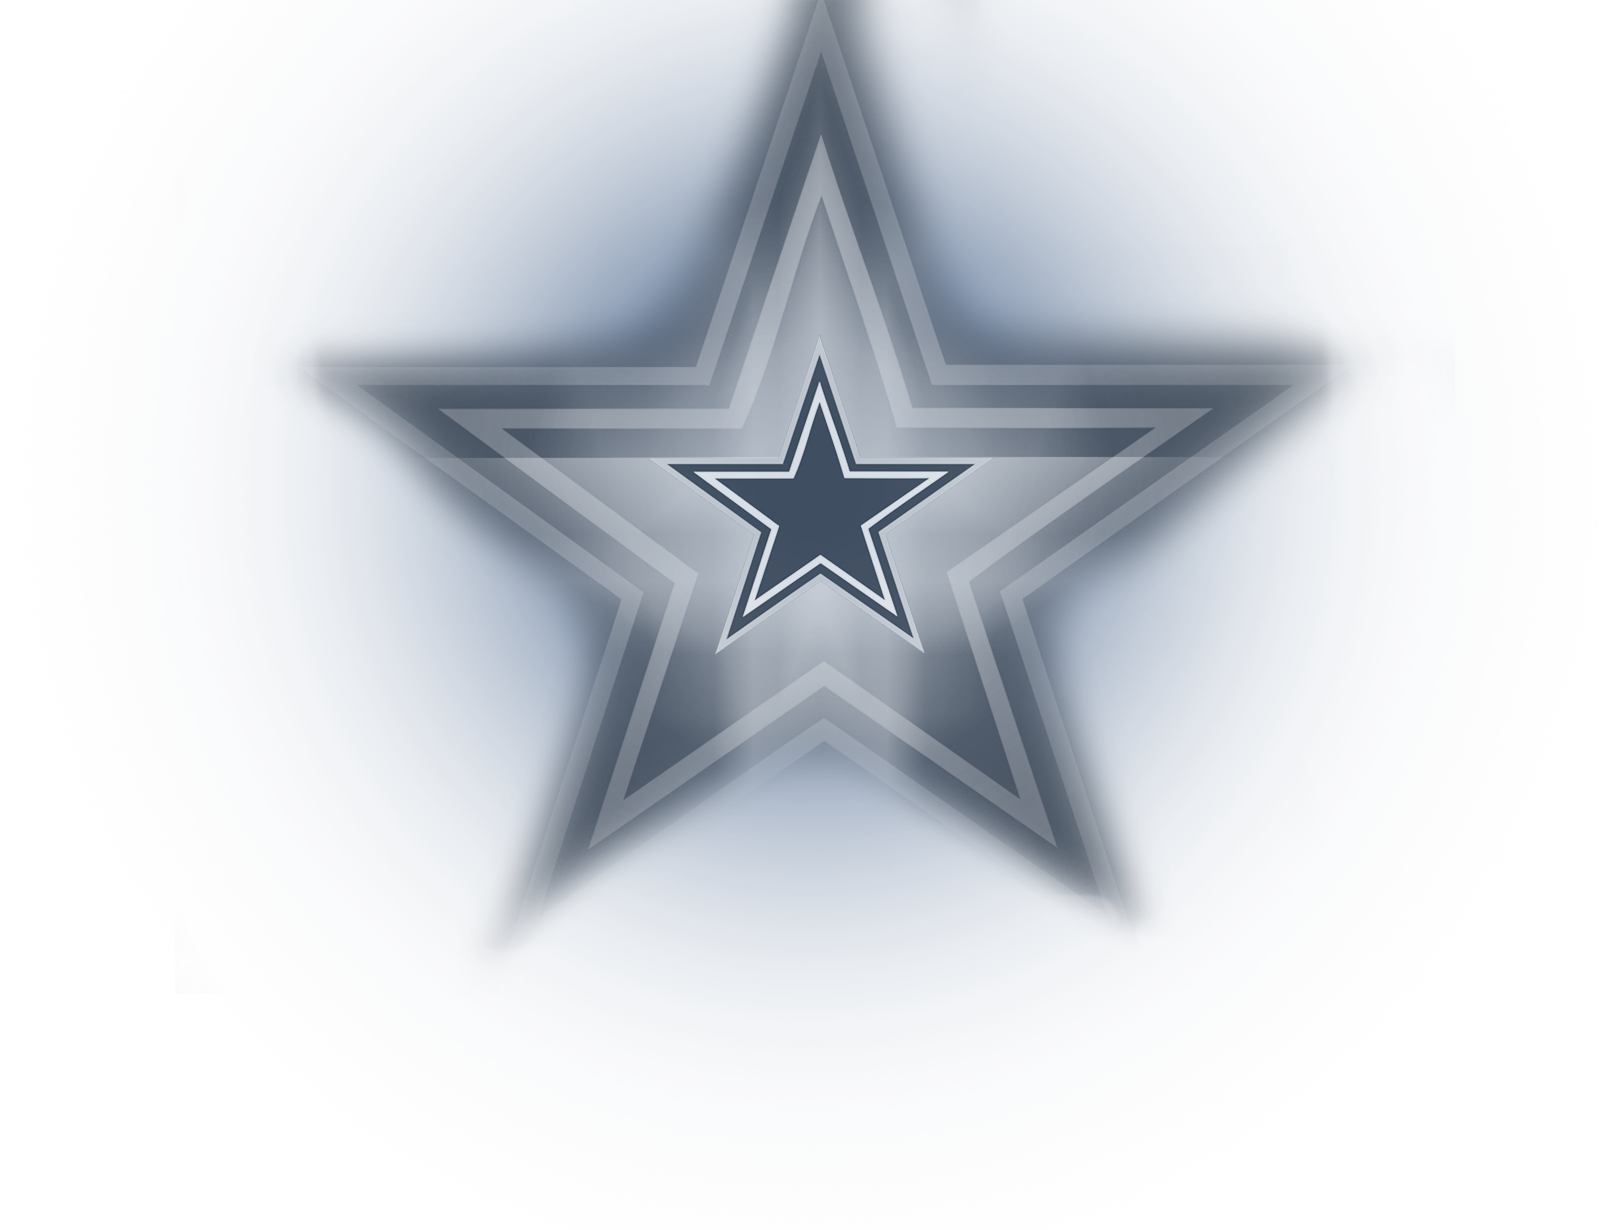 Dallas Cowboys Star Png